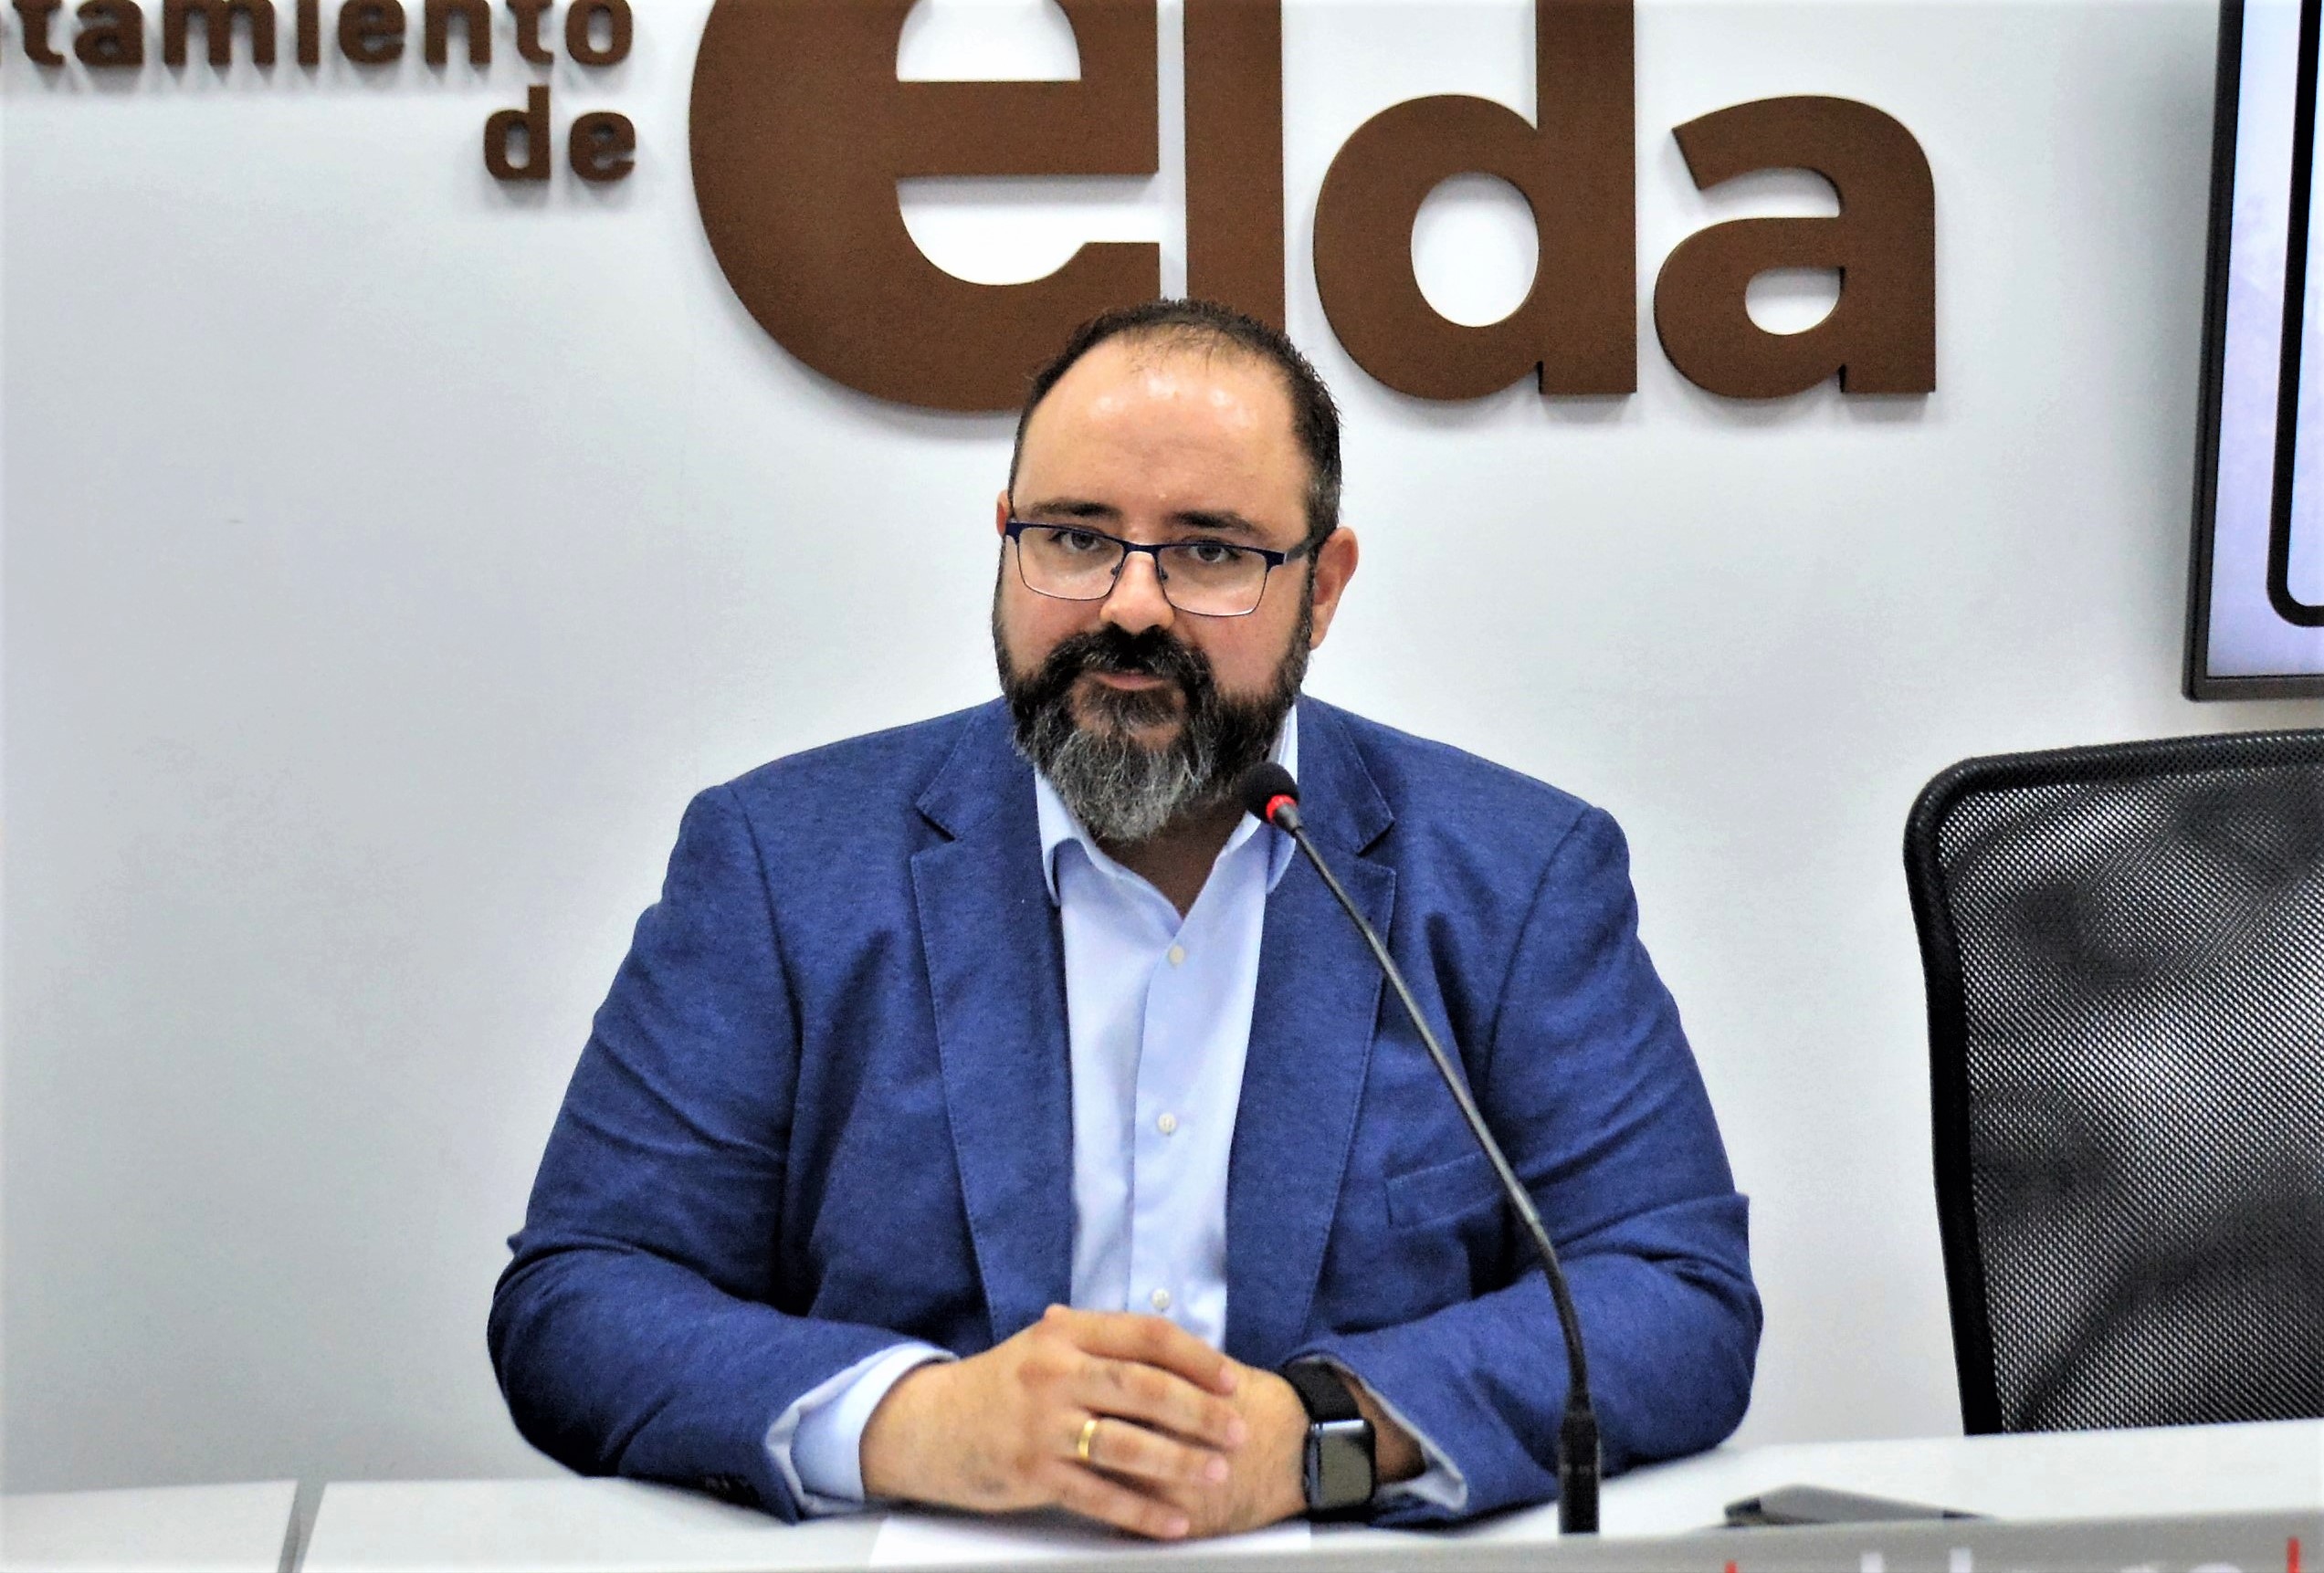 El Ayuntamiento de Elda publica la lista provisional de admitidos a la convocatoria de 16 plazas de auxiliar administrativo con más de 1.000 aspirantes